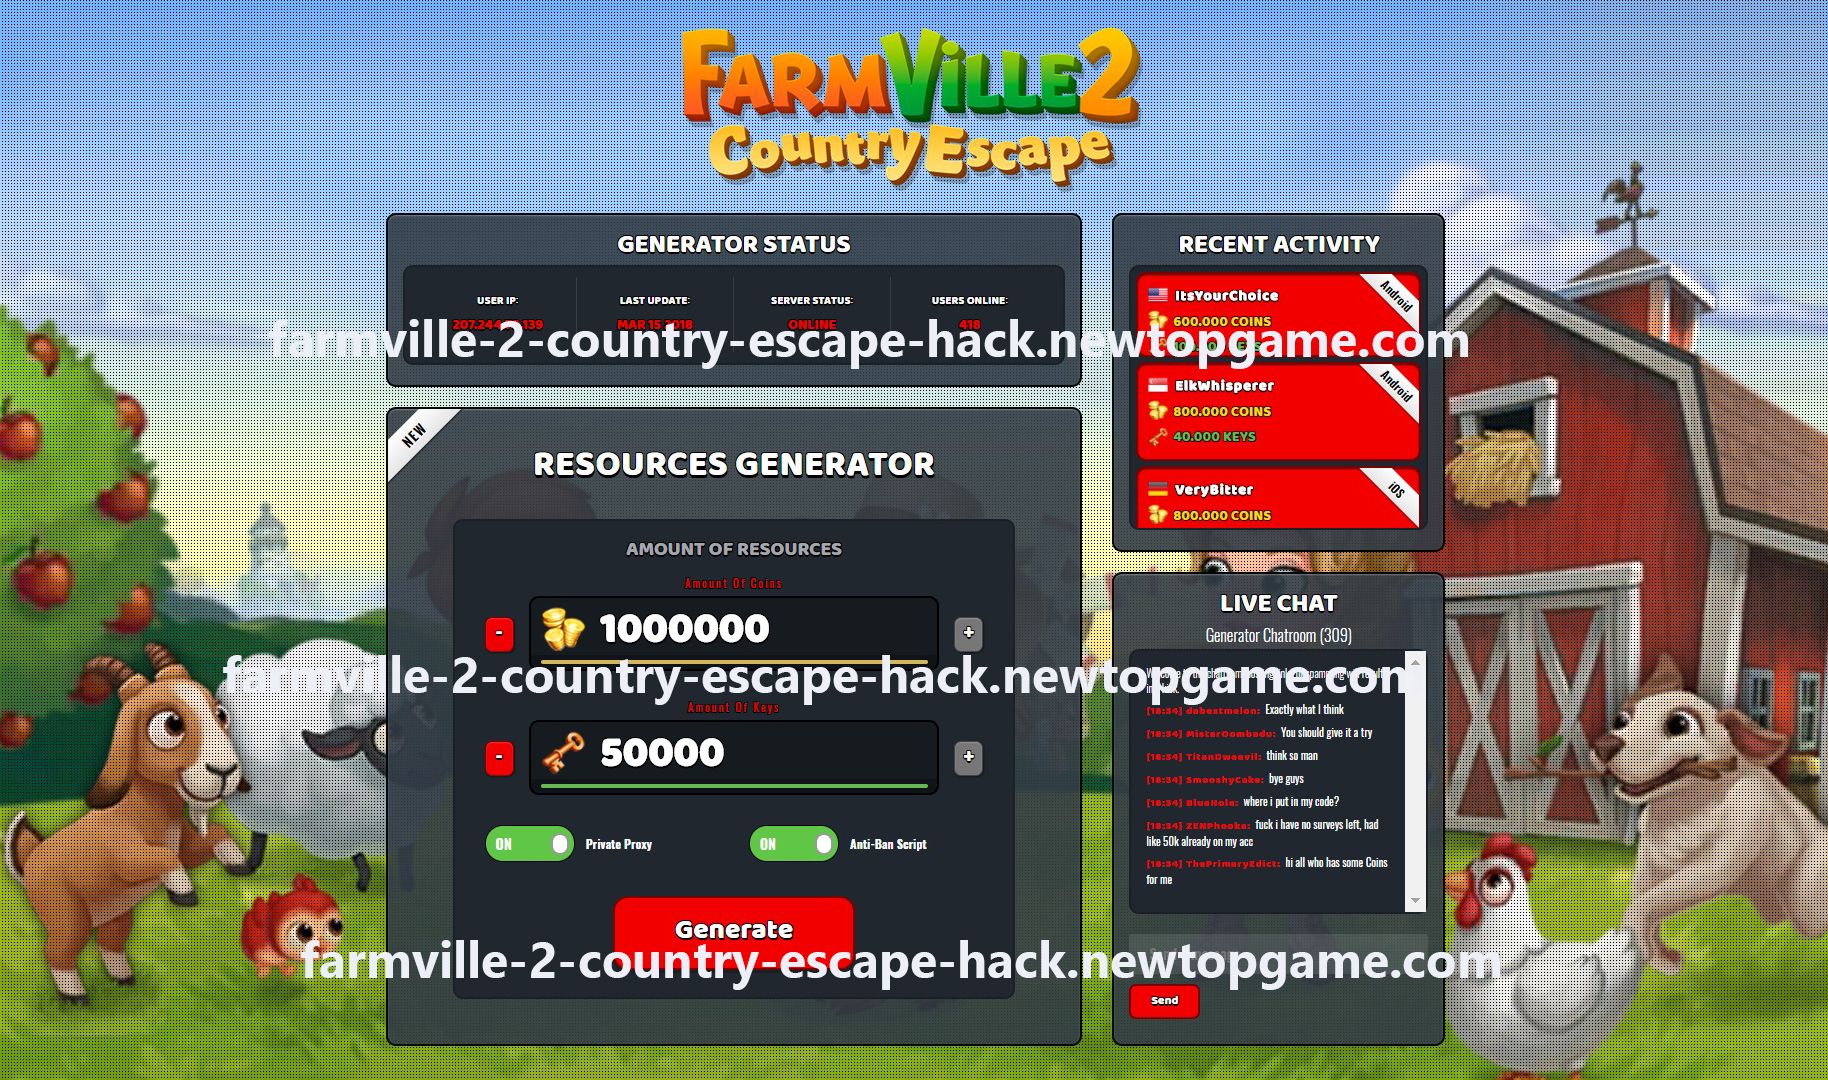 hacking farmville 2 country escape through facebook